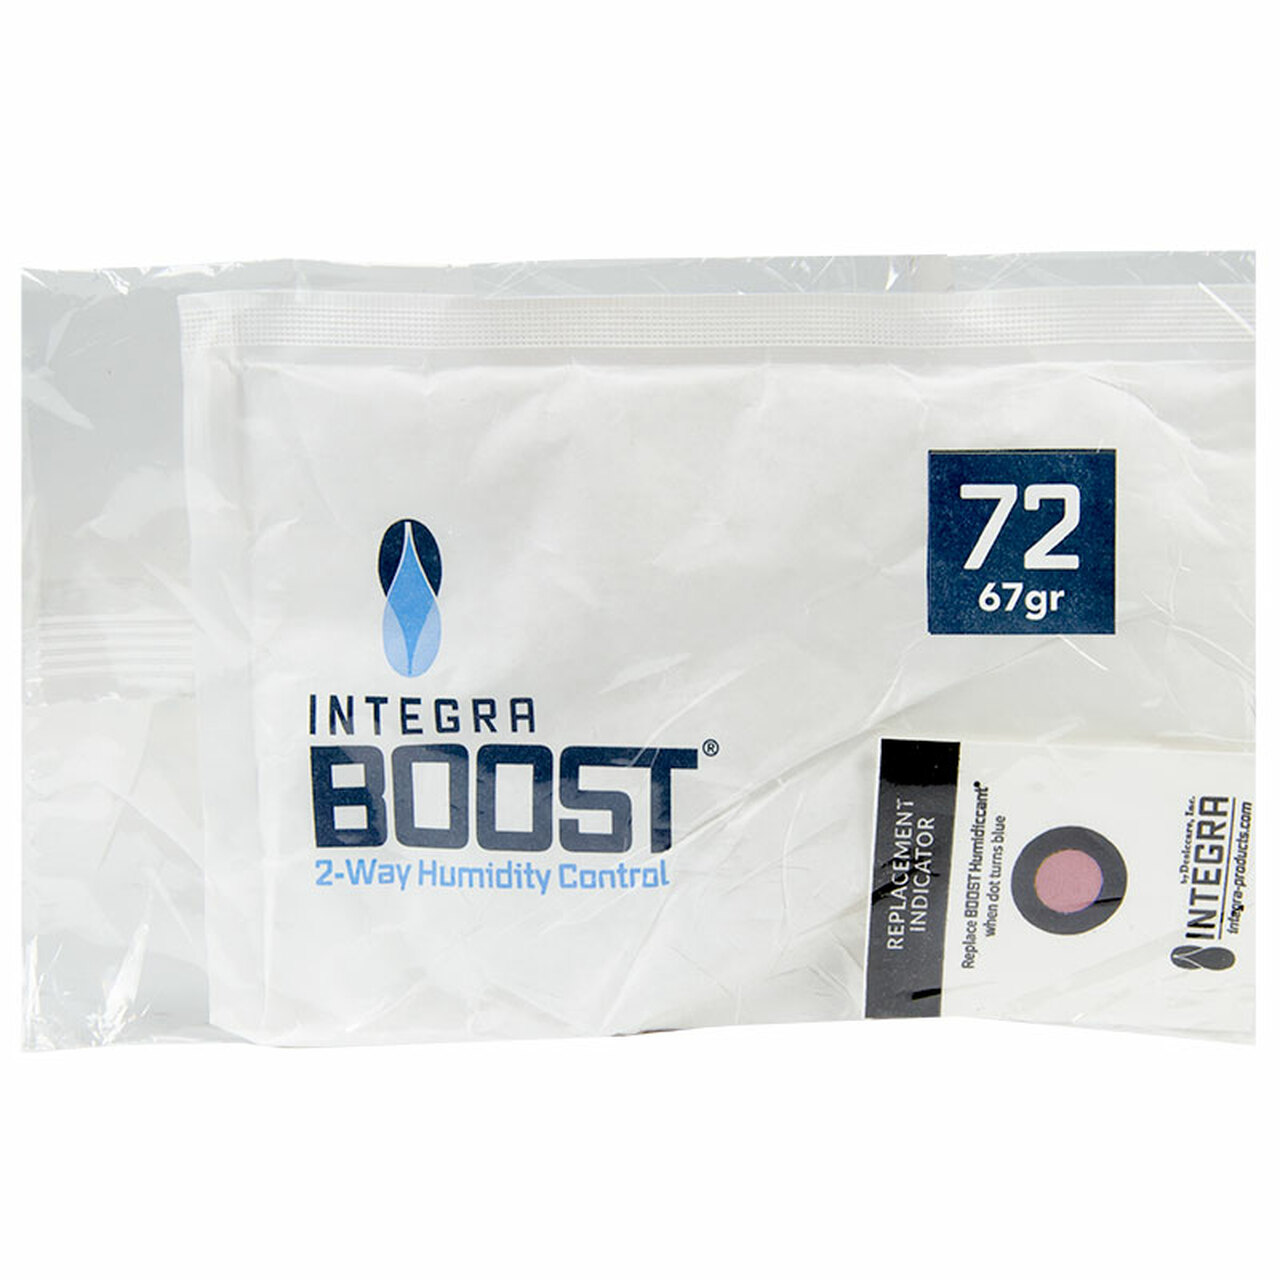 Integra Boost Humi-Pad 67g 72% humidity